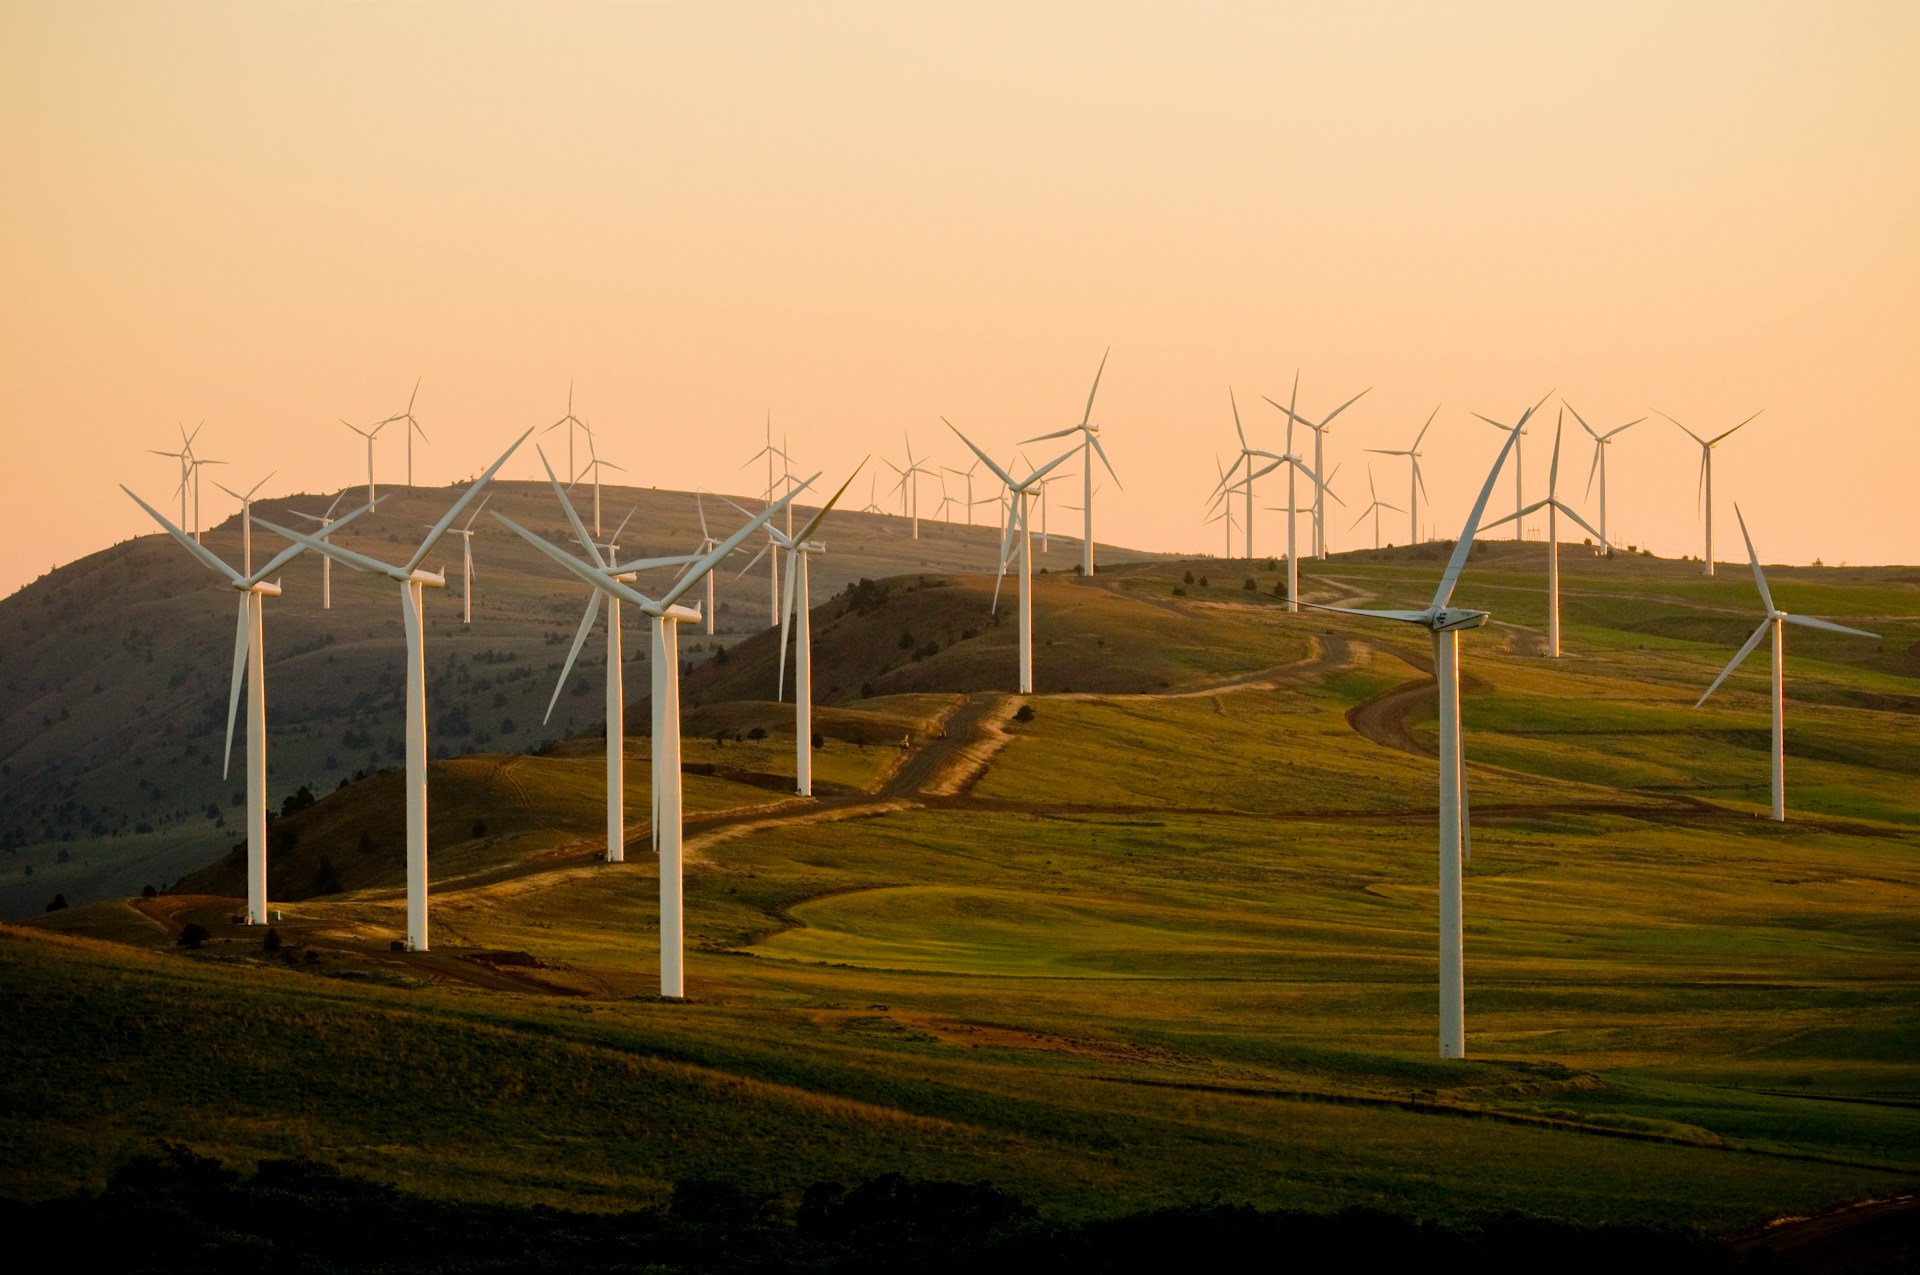 Rural wind turbine farm